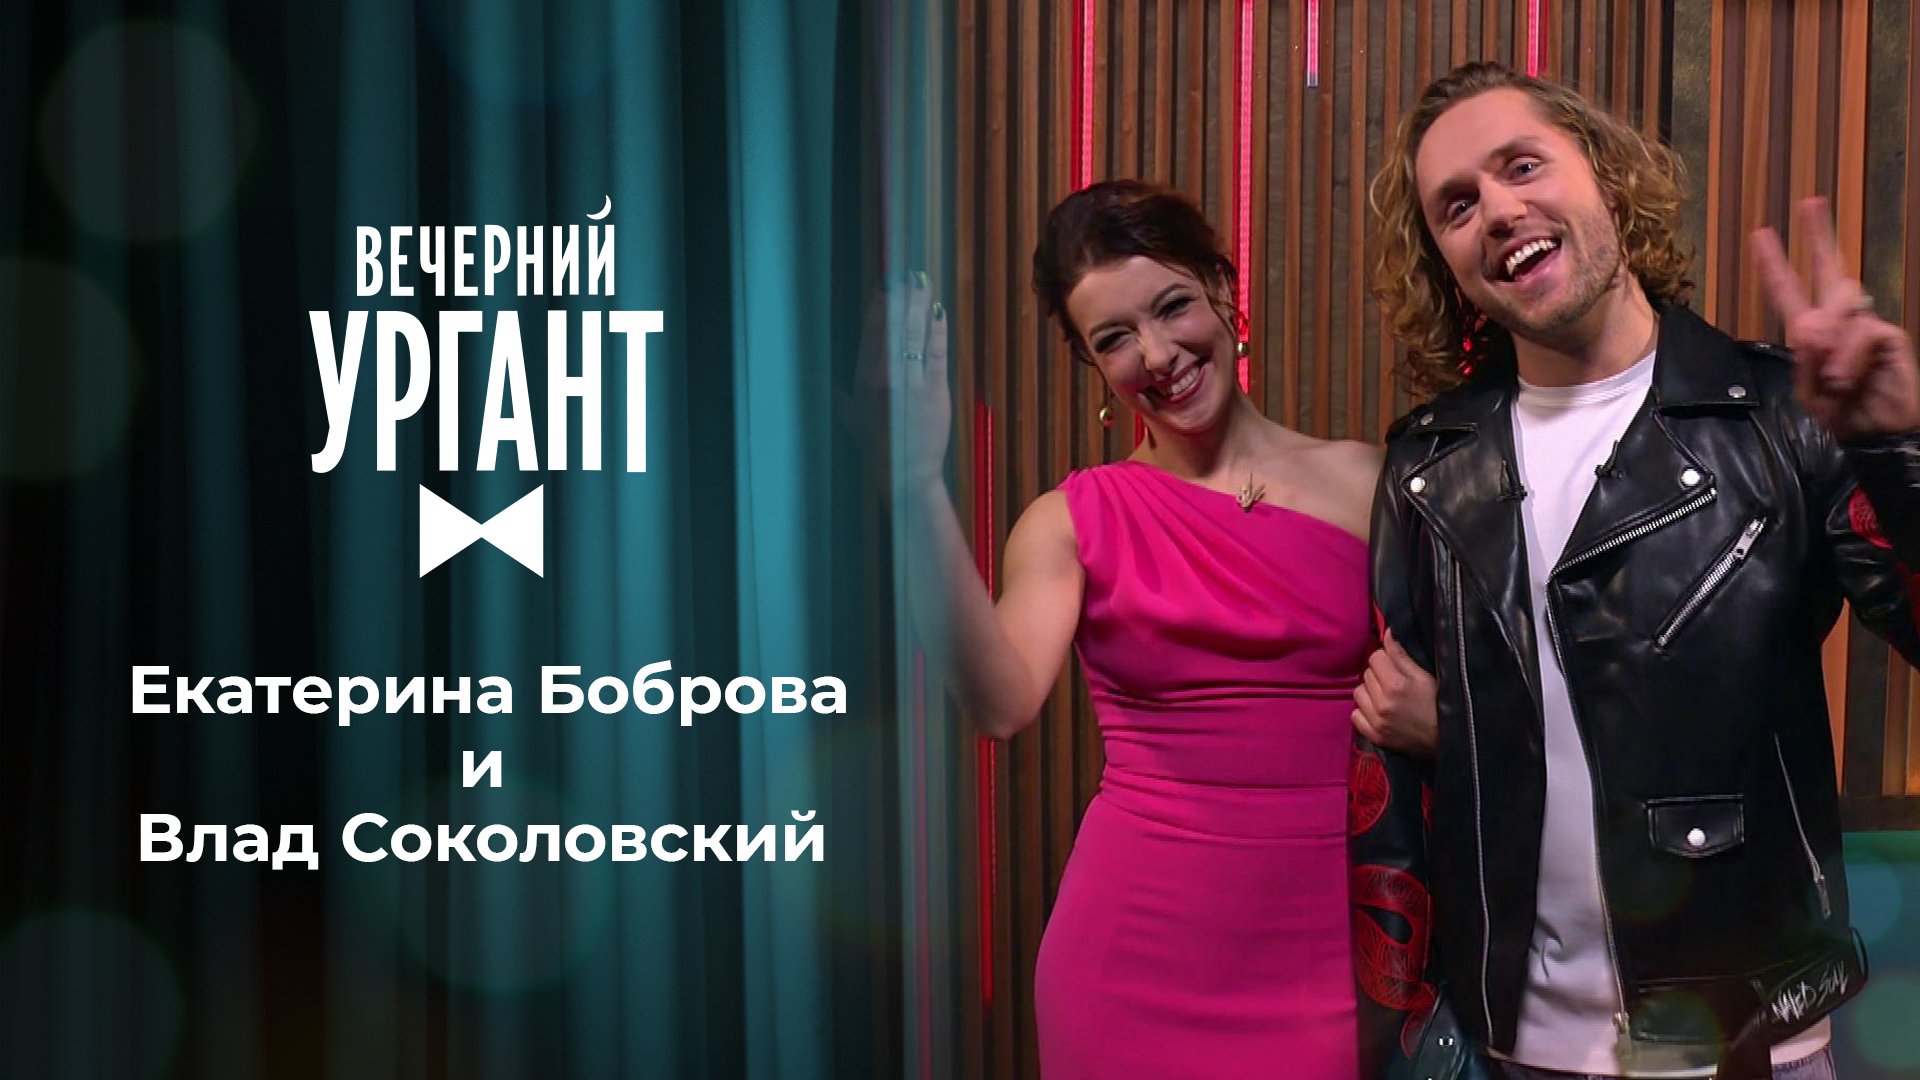 «Вечерний Ургант». Екатерина Боброва и Влад Соколовский